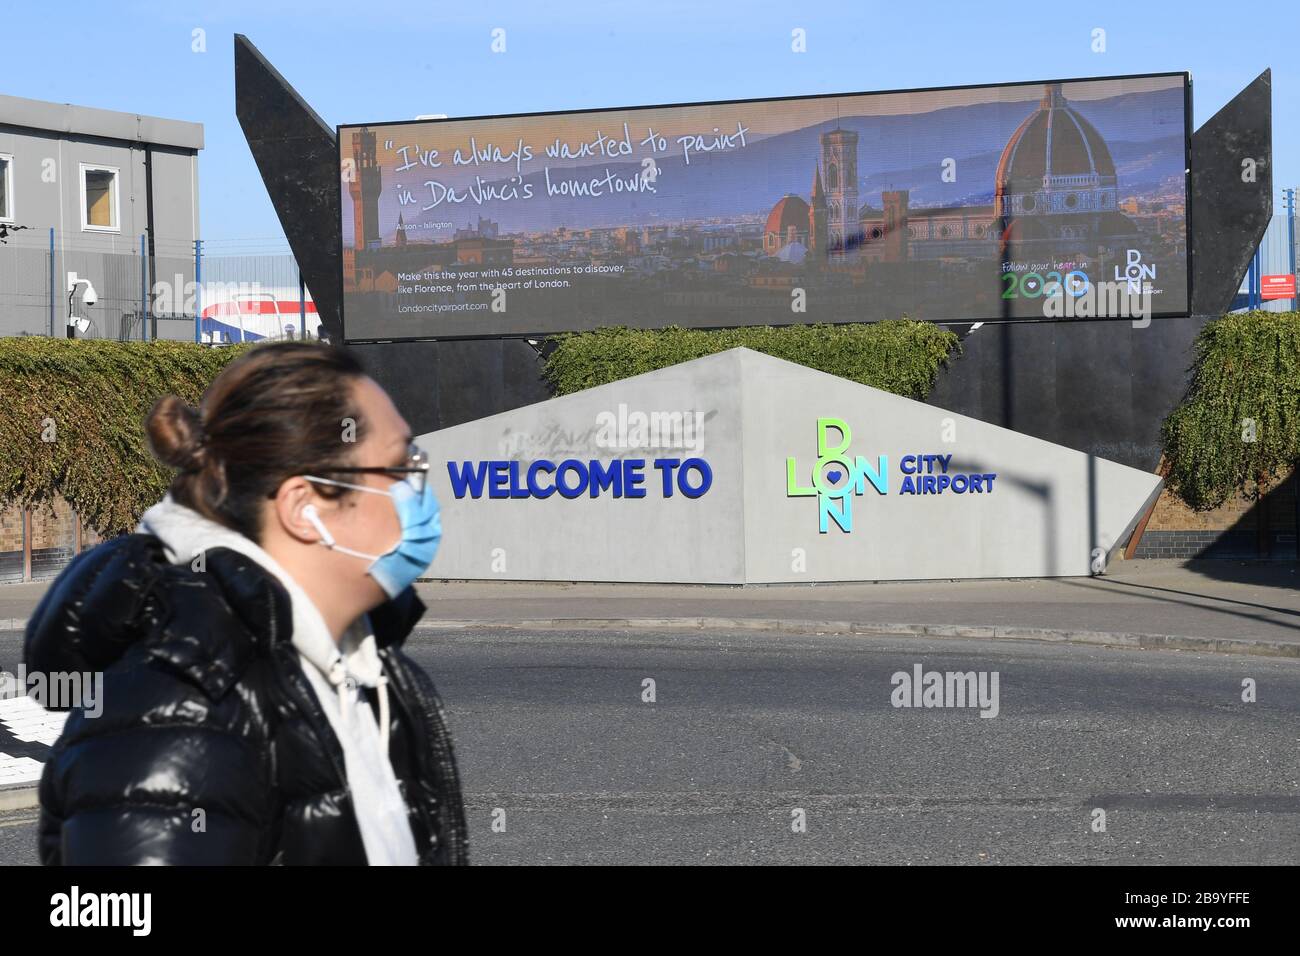 Une femme portant un masque de randonnée à l'aéroport de Londres City qui doit suspendre ses opérations jusqu'à la fin du mois d'avril, en raison d'un effondrement de la demande causé par l'éclosion de coronavirus. Banque D'Images